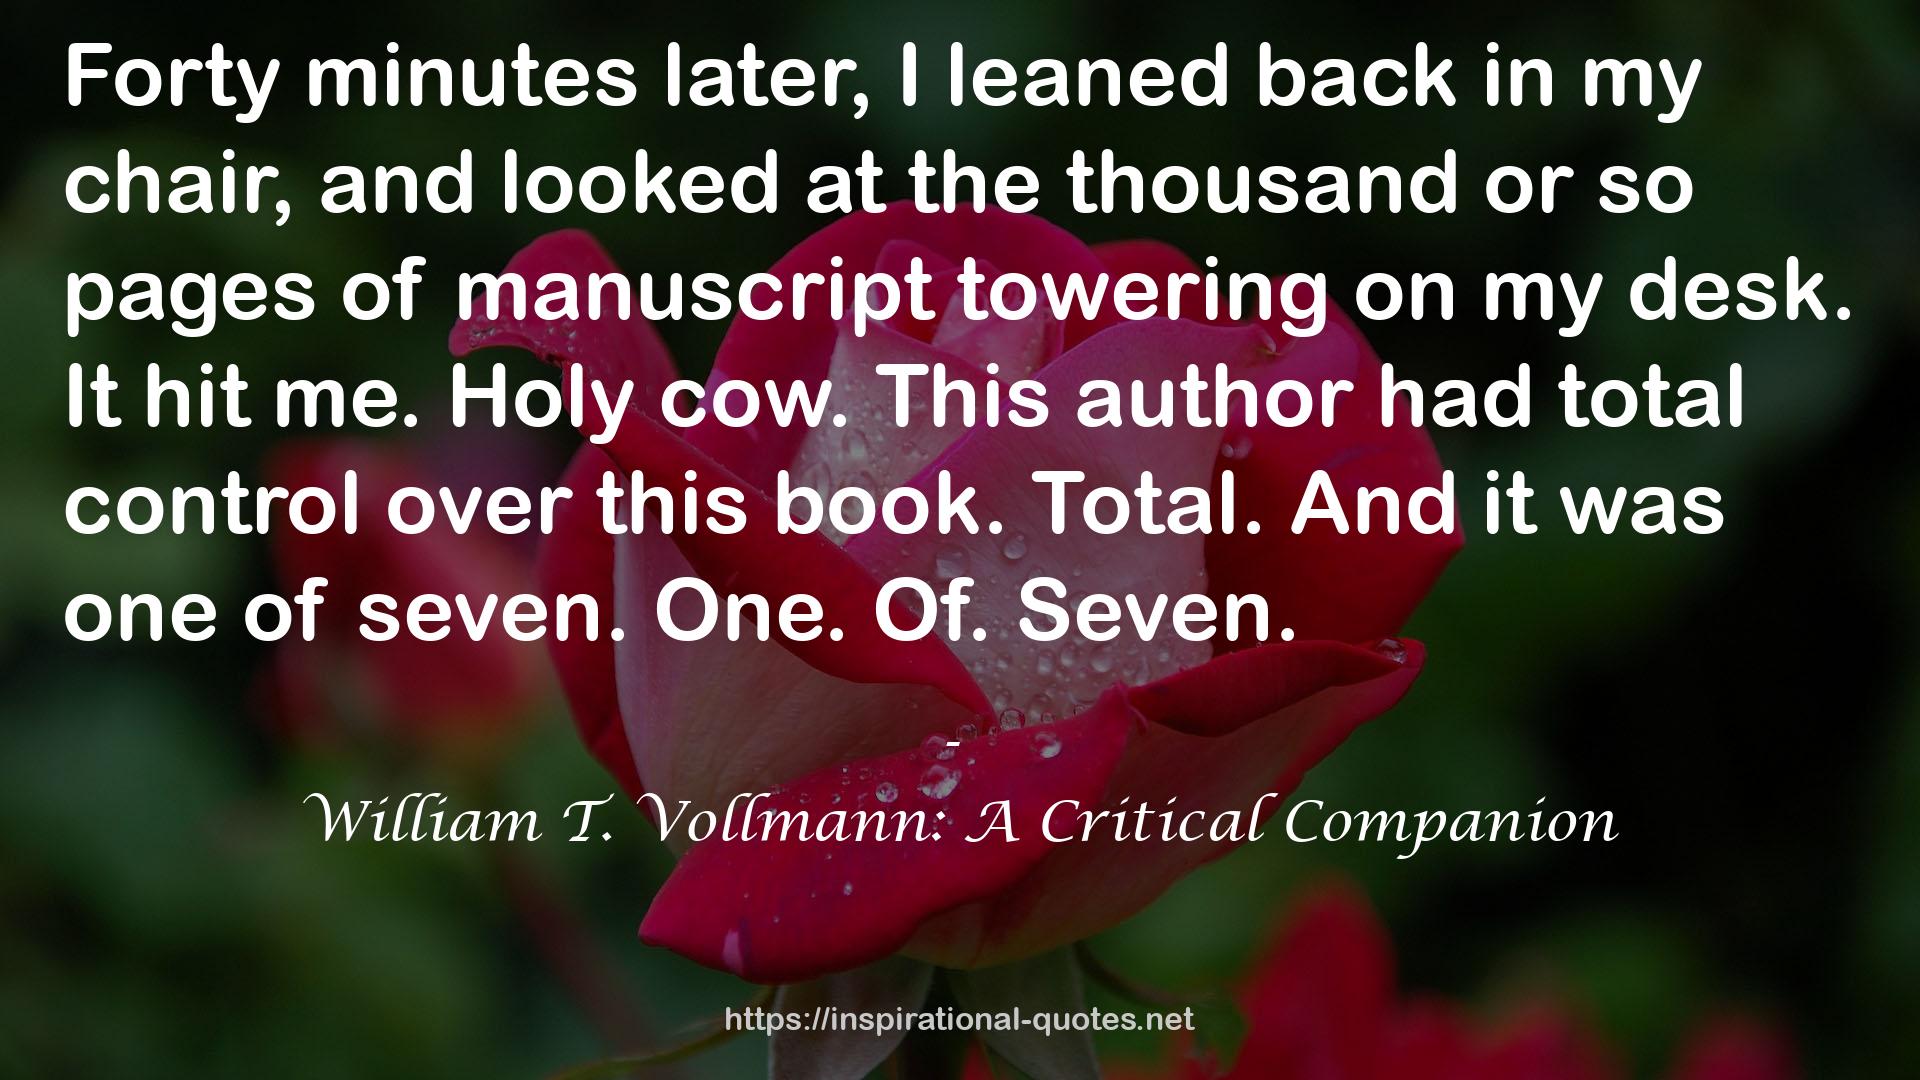 William T. Vollmann: A Critical Companion QUOTES